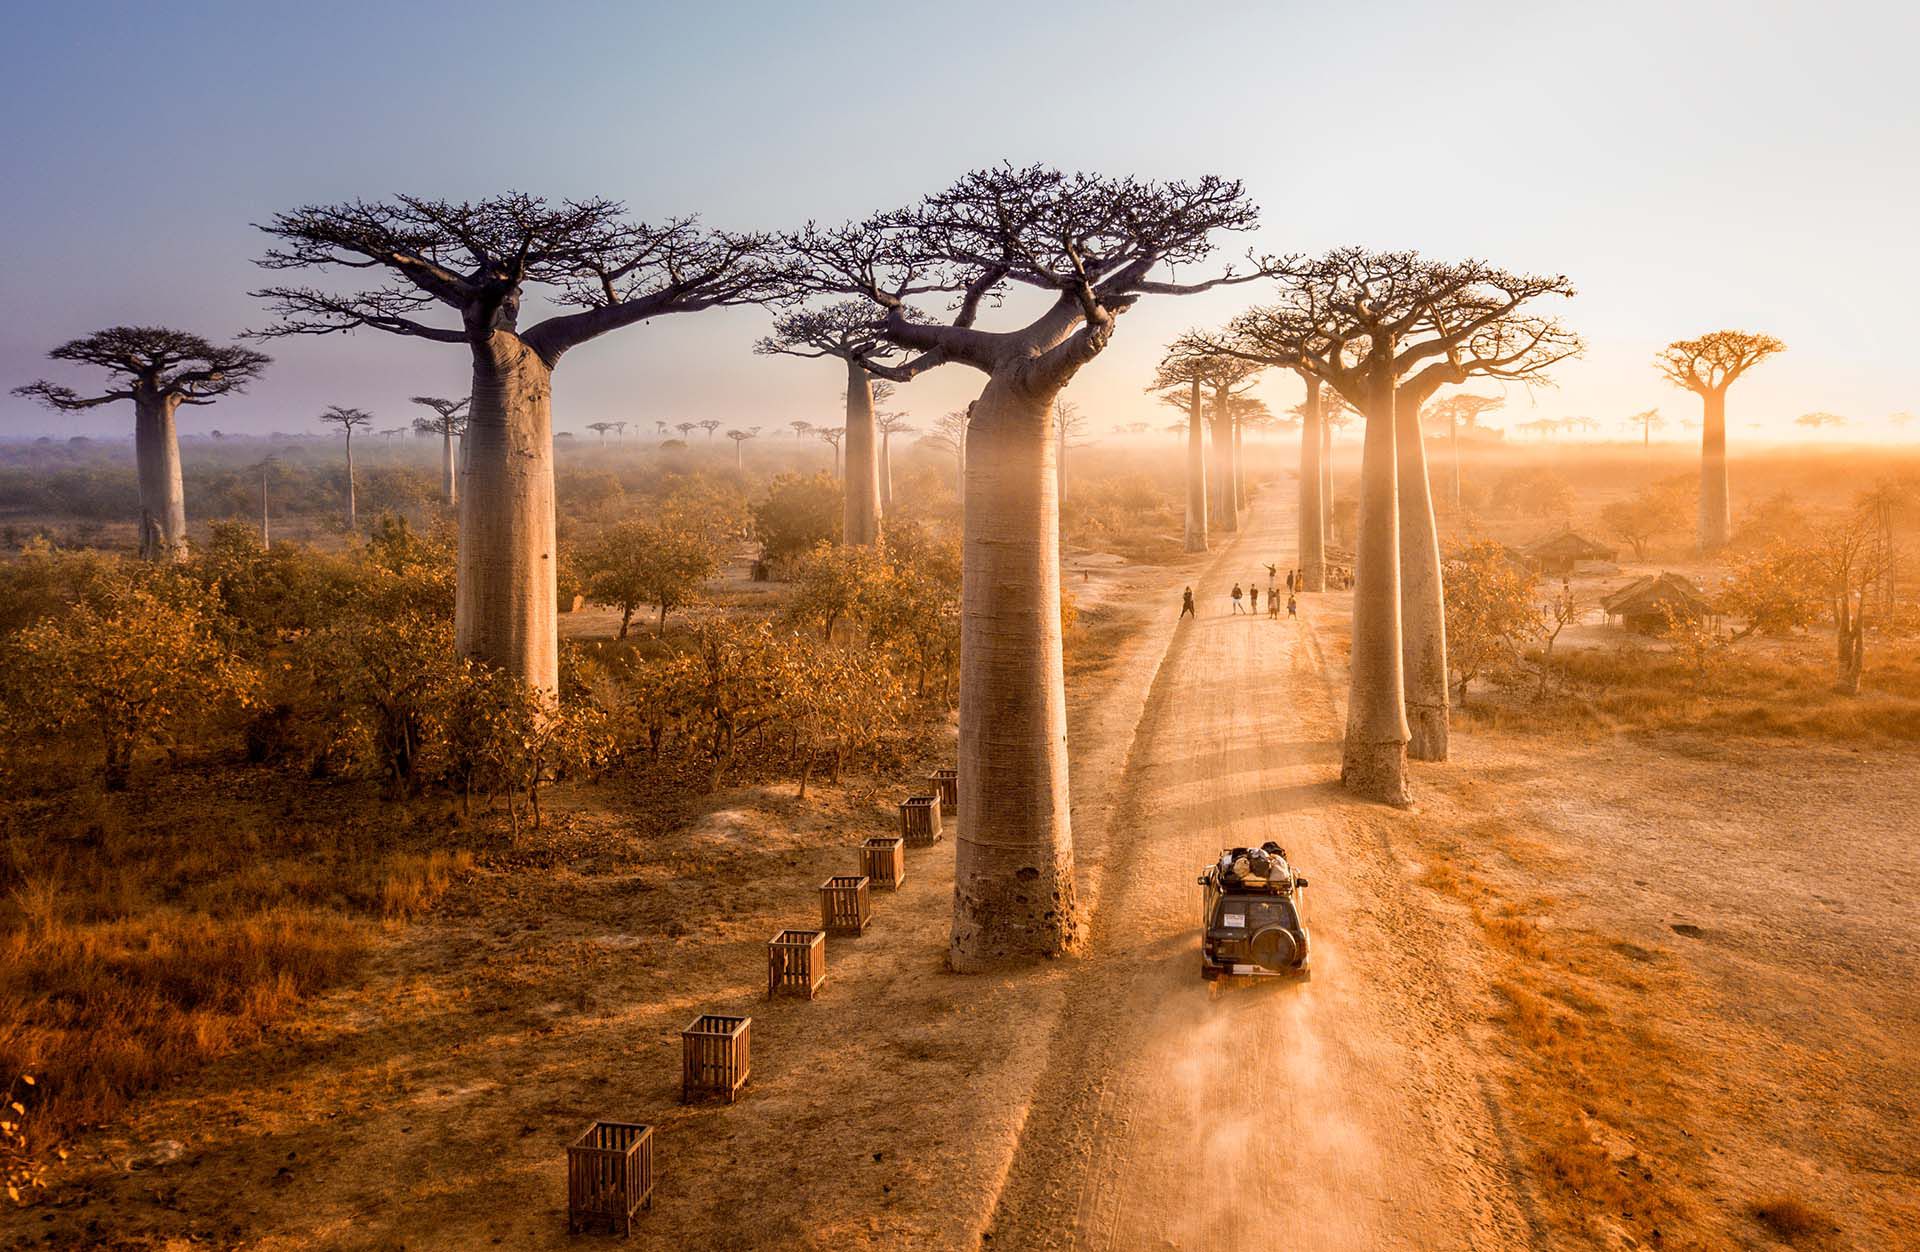 Lémures, baobabs, selva tropical, desierto, senderismo y buceo: Madagascar es un destino de ensueño para los entusiastas del aire libre. Visitar los árboles Baobab en Madagascar es uno de los principales atractivos de este país